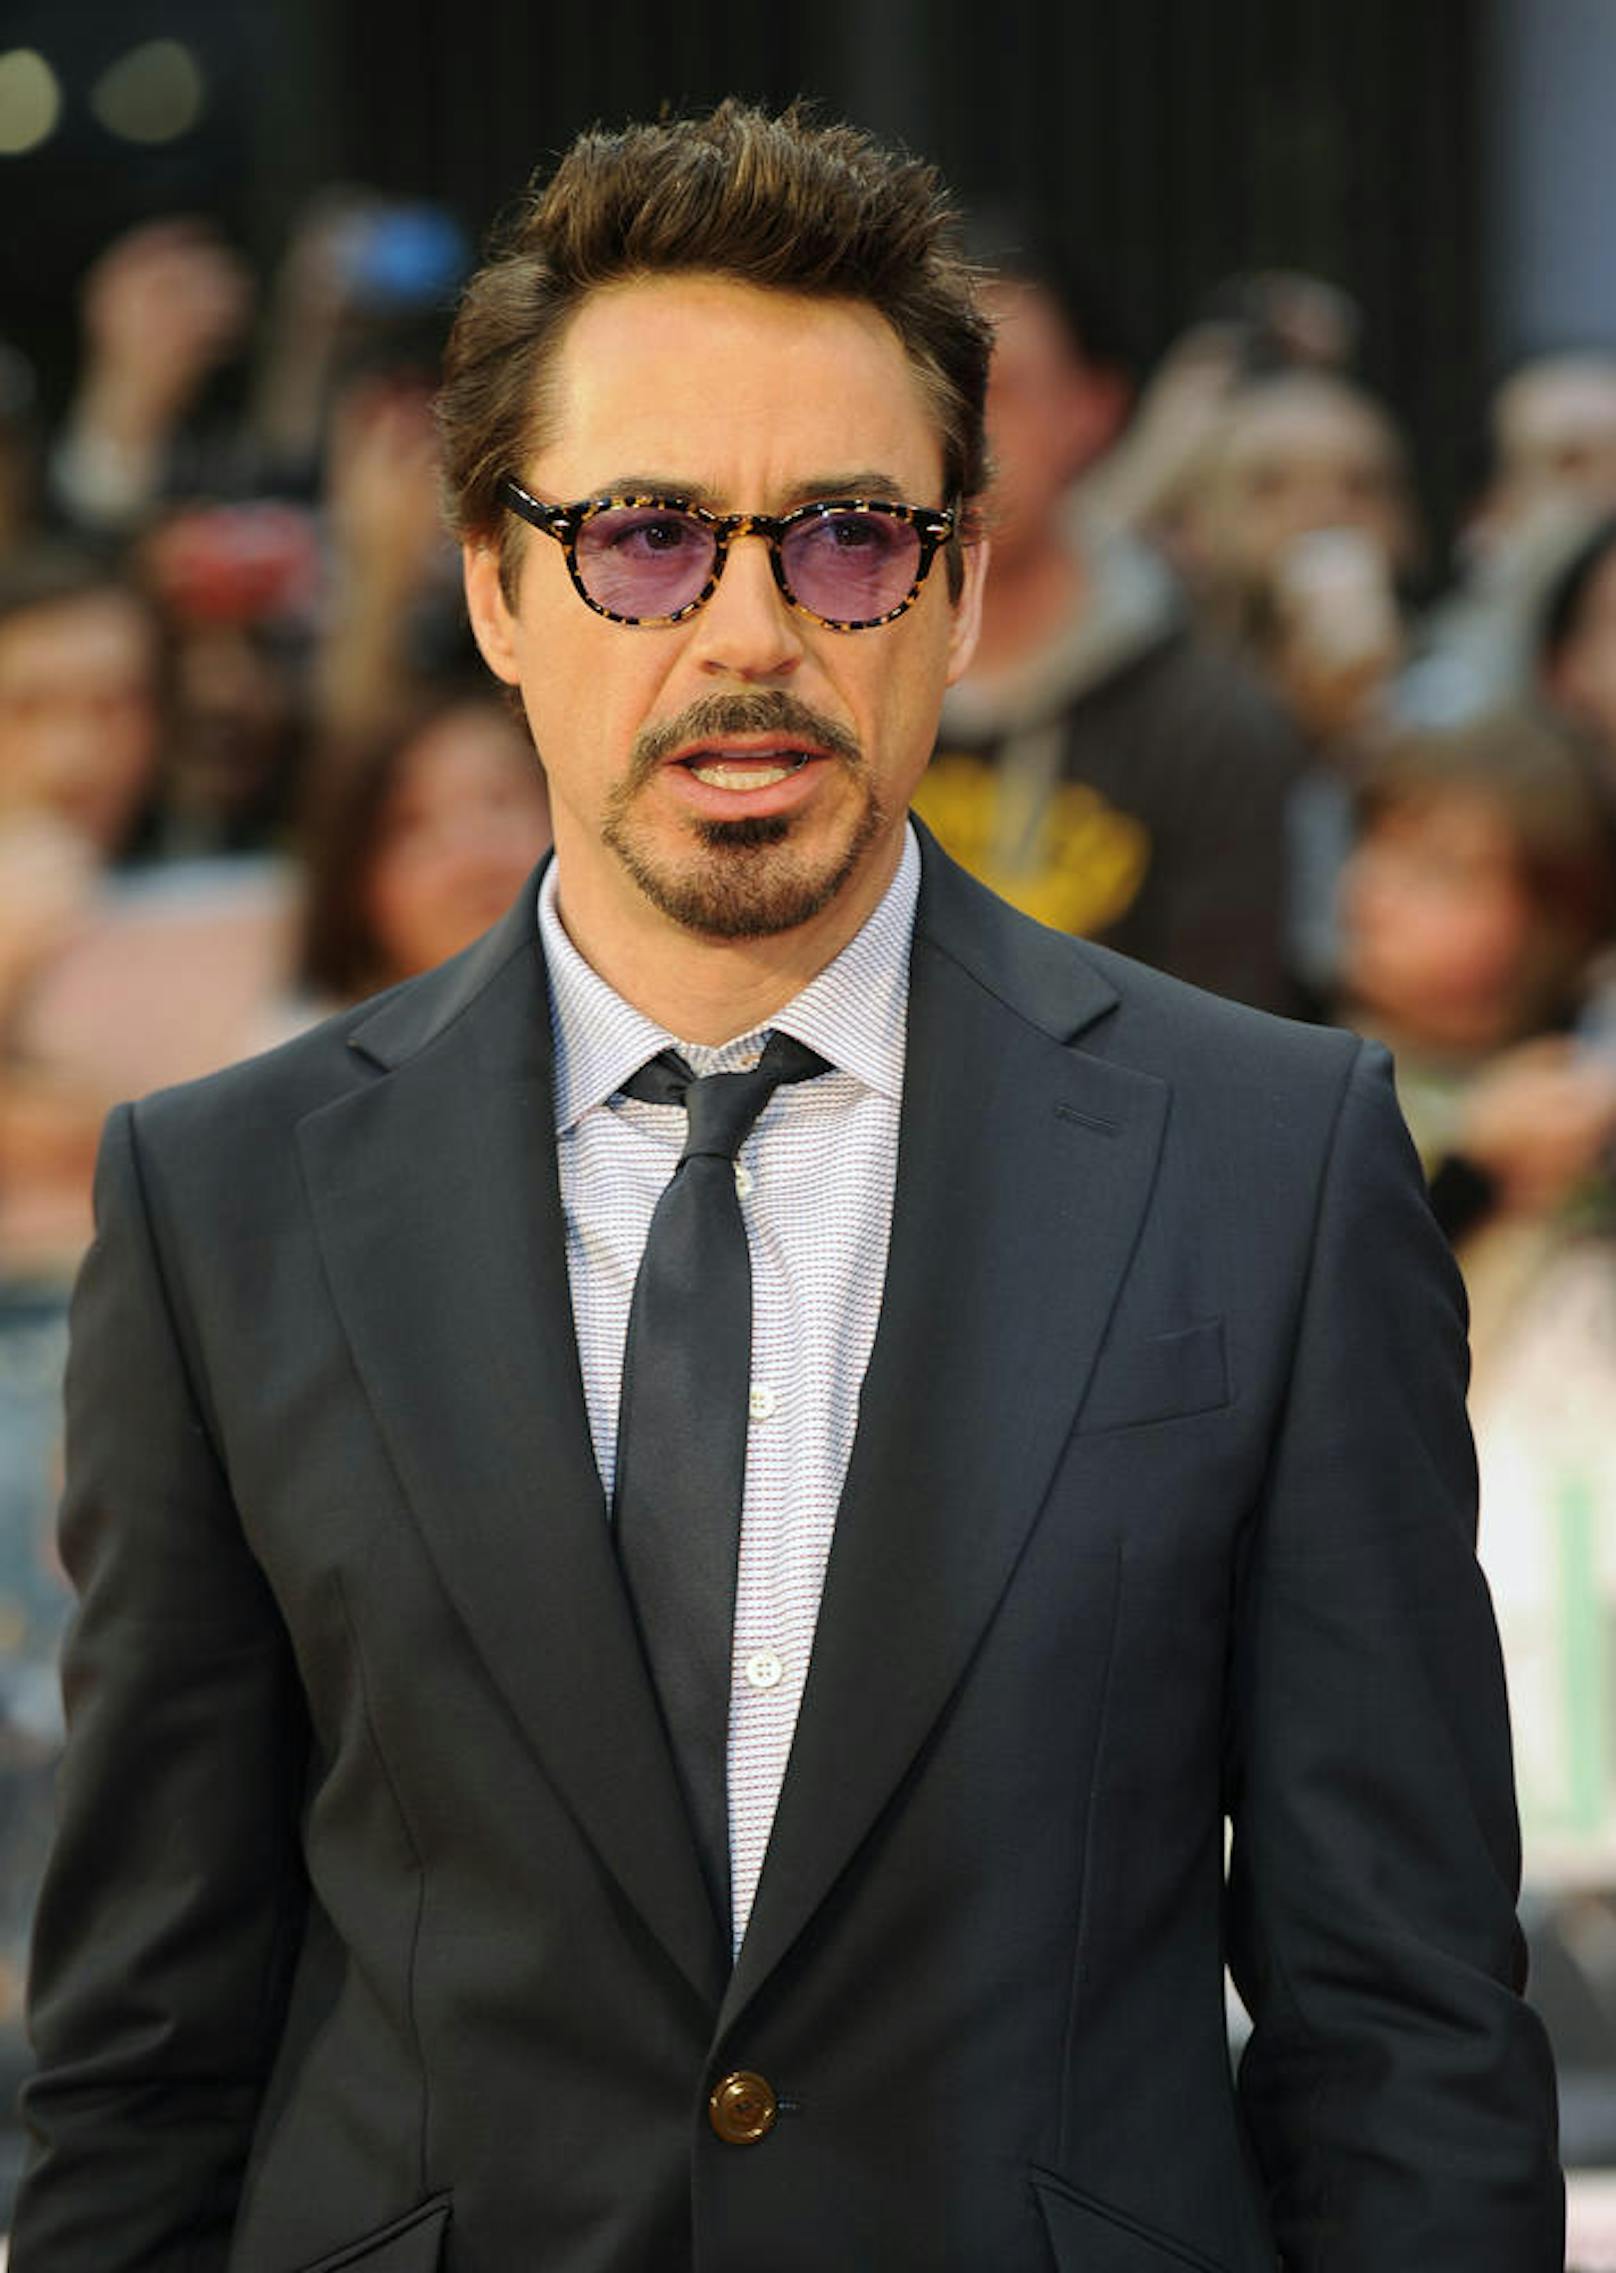 Robert Downey Jr. bei der Premiere von "The Avengers" in London, 2012.